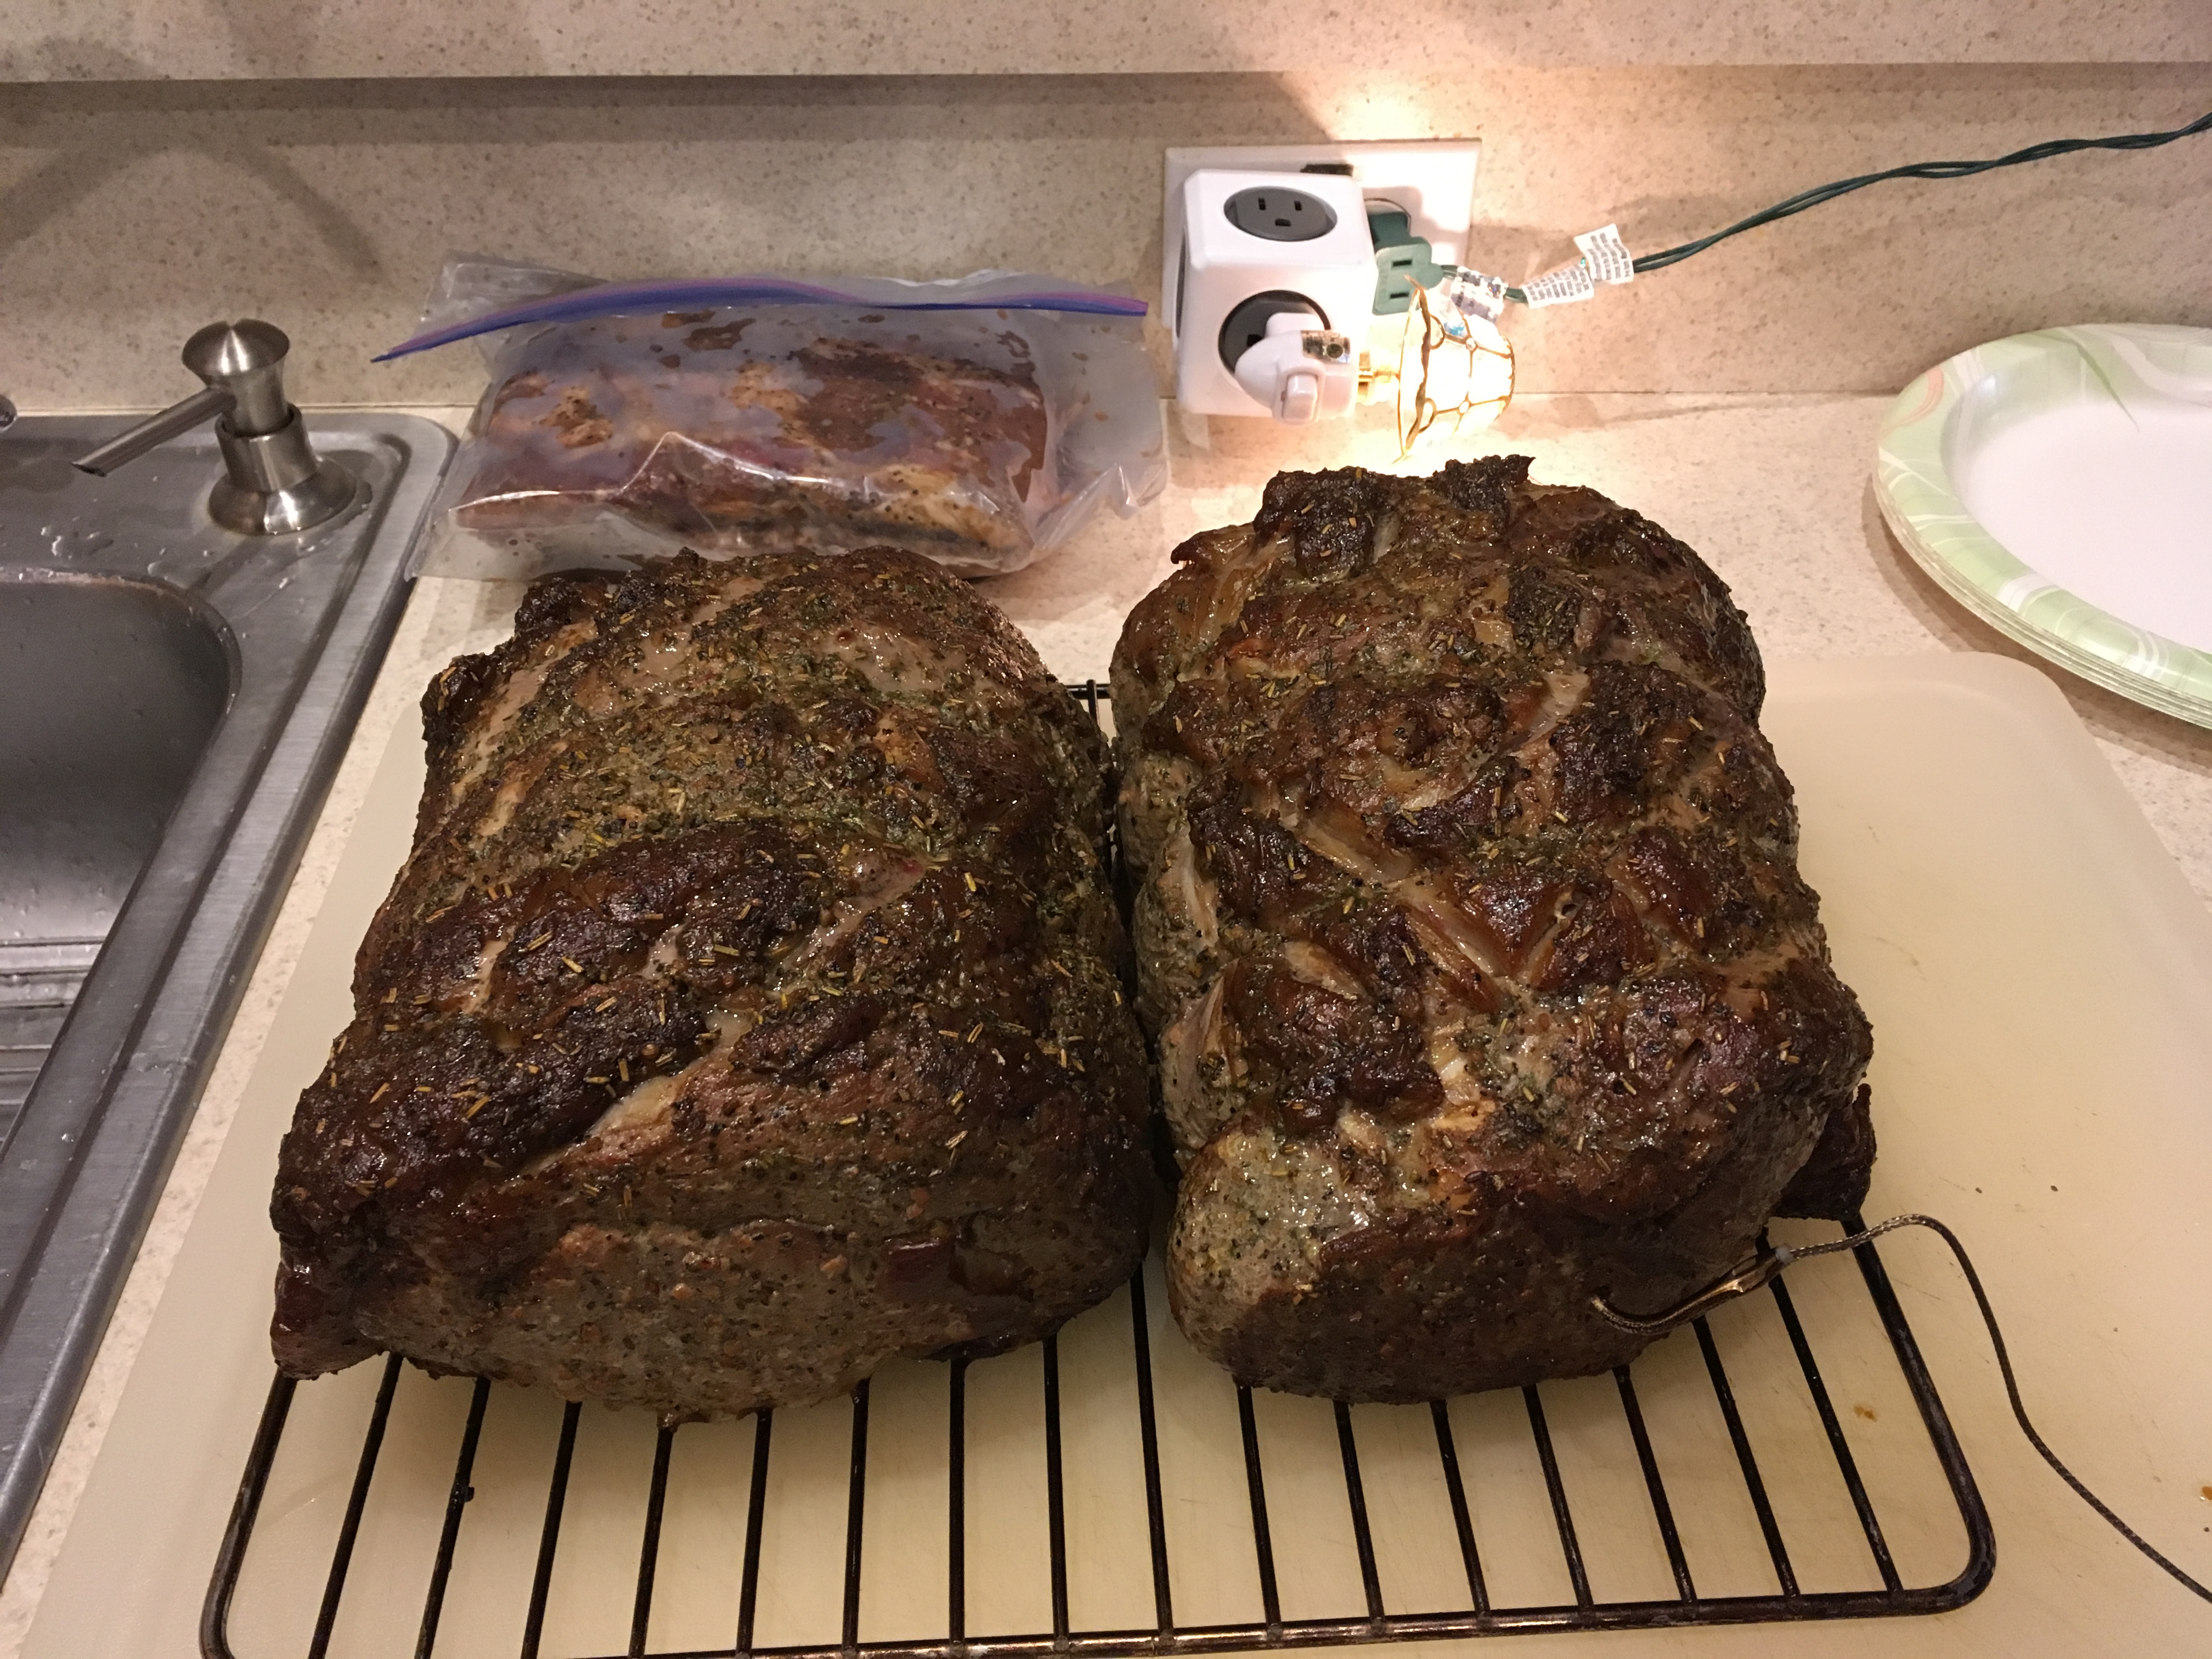 Smoked Prime Rib Roast Recipe Allrecipes,Bake Bacon In Oven 425